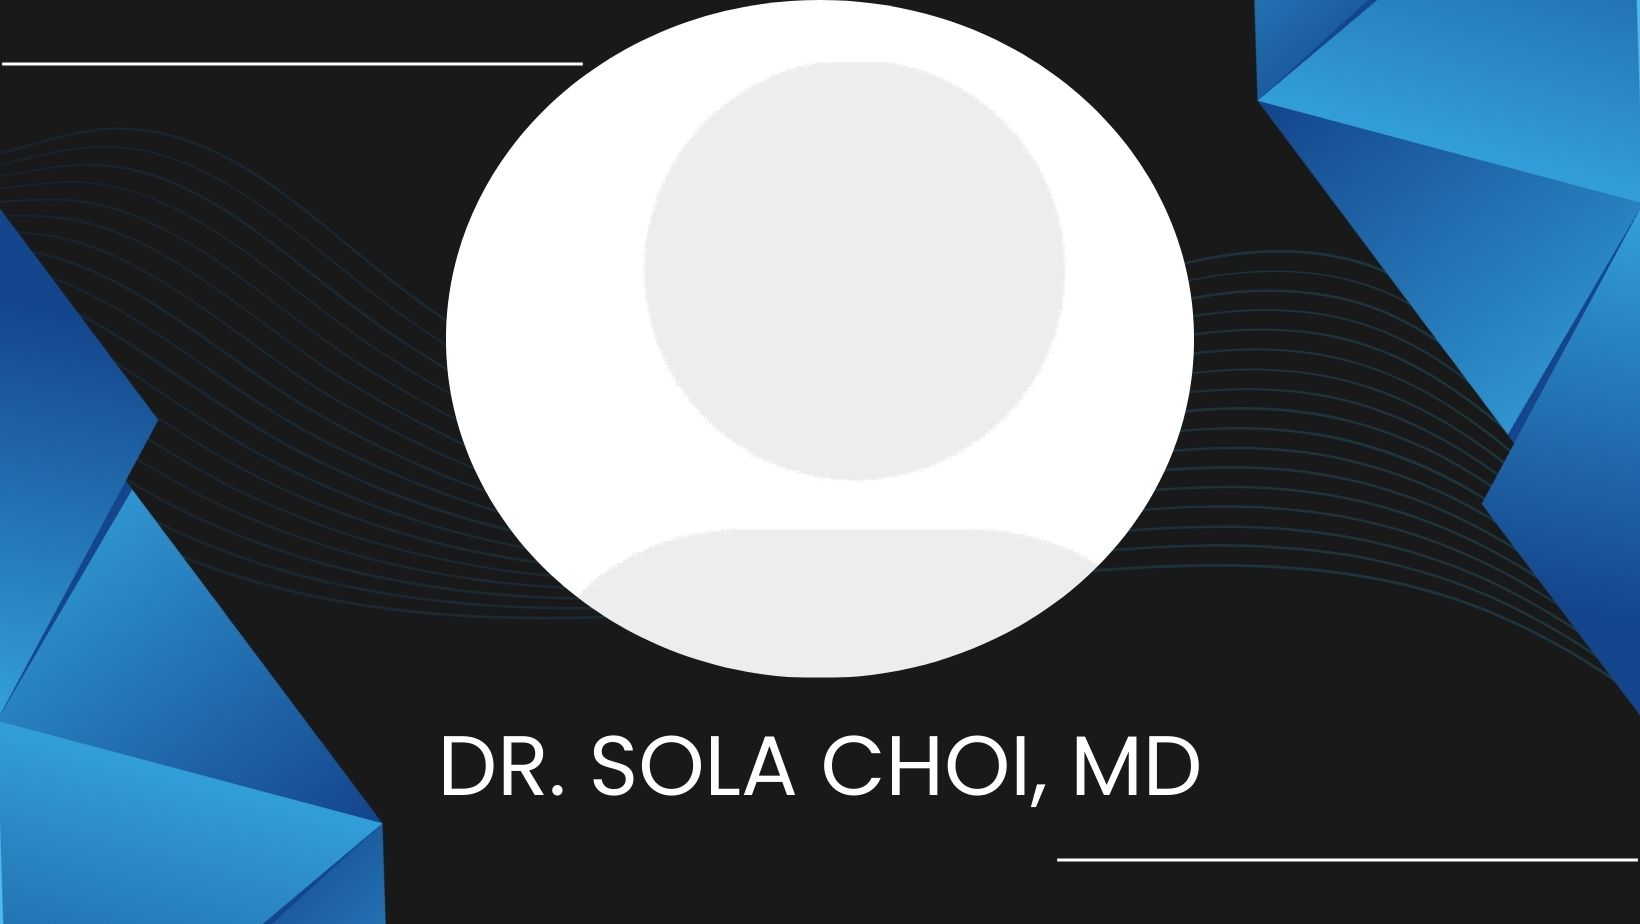 Dr. Sola Choi